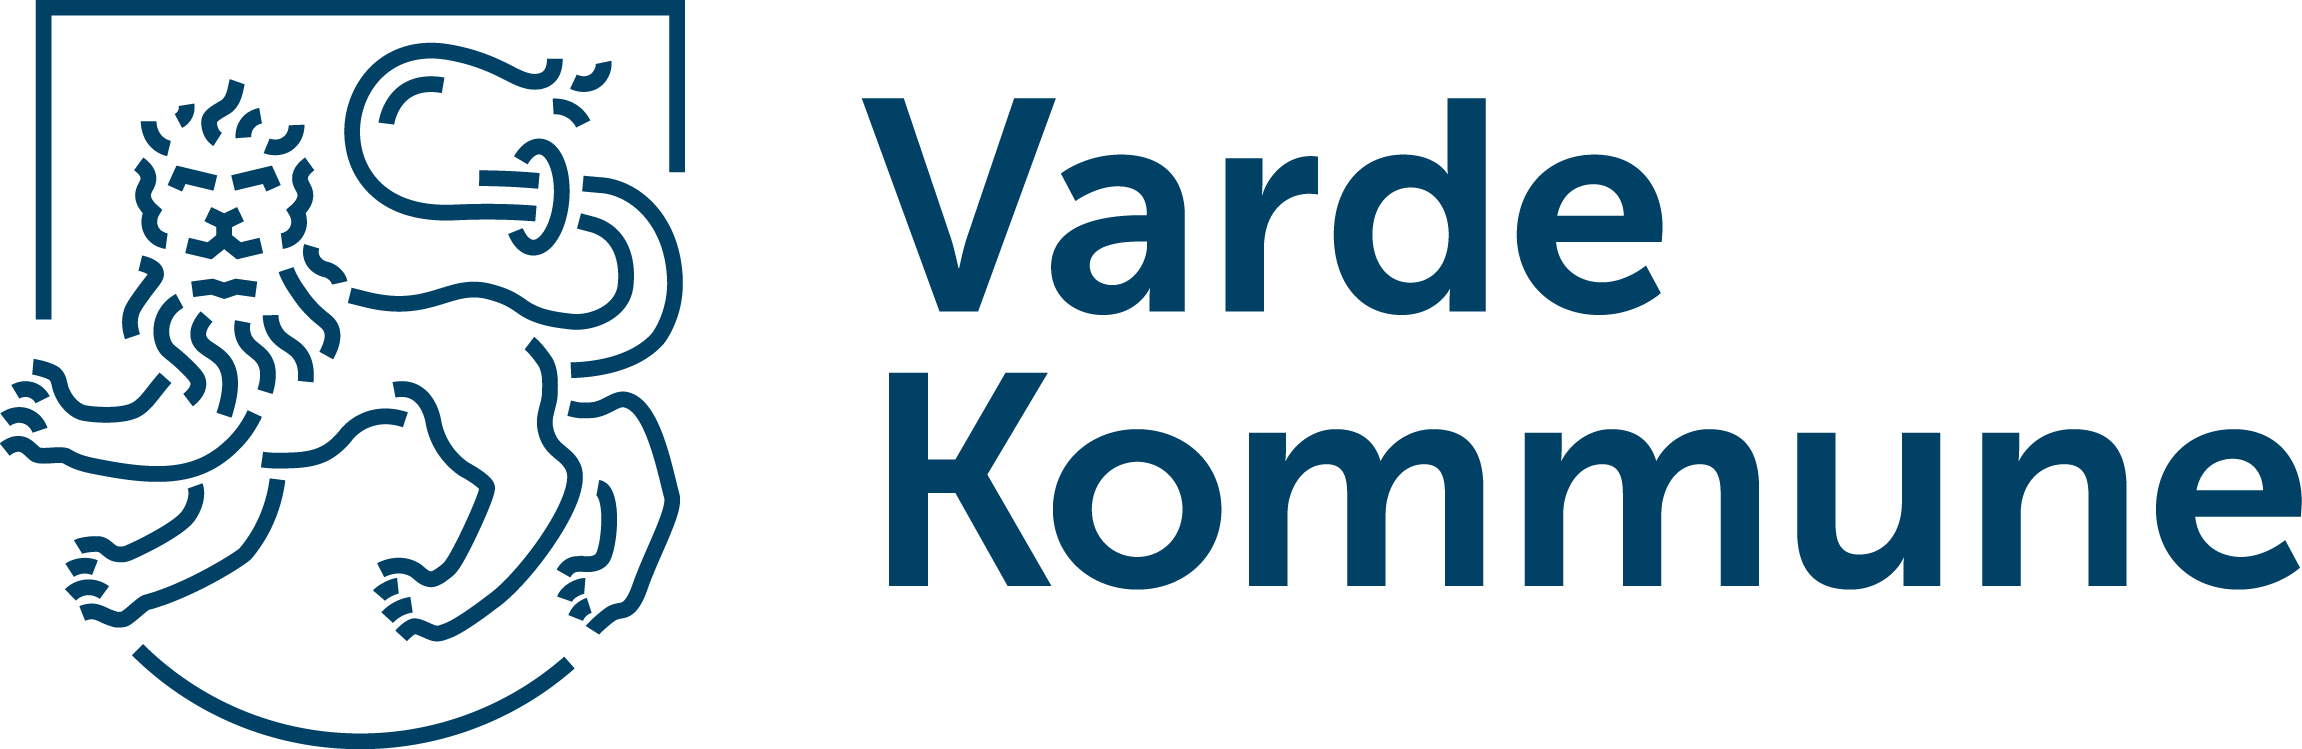 Varde-Kommune-logo-bred-RGB-blaa.png